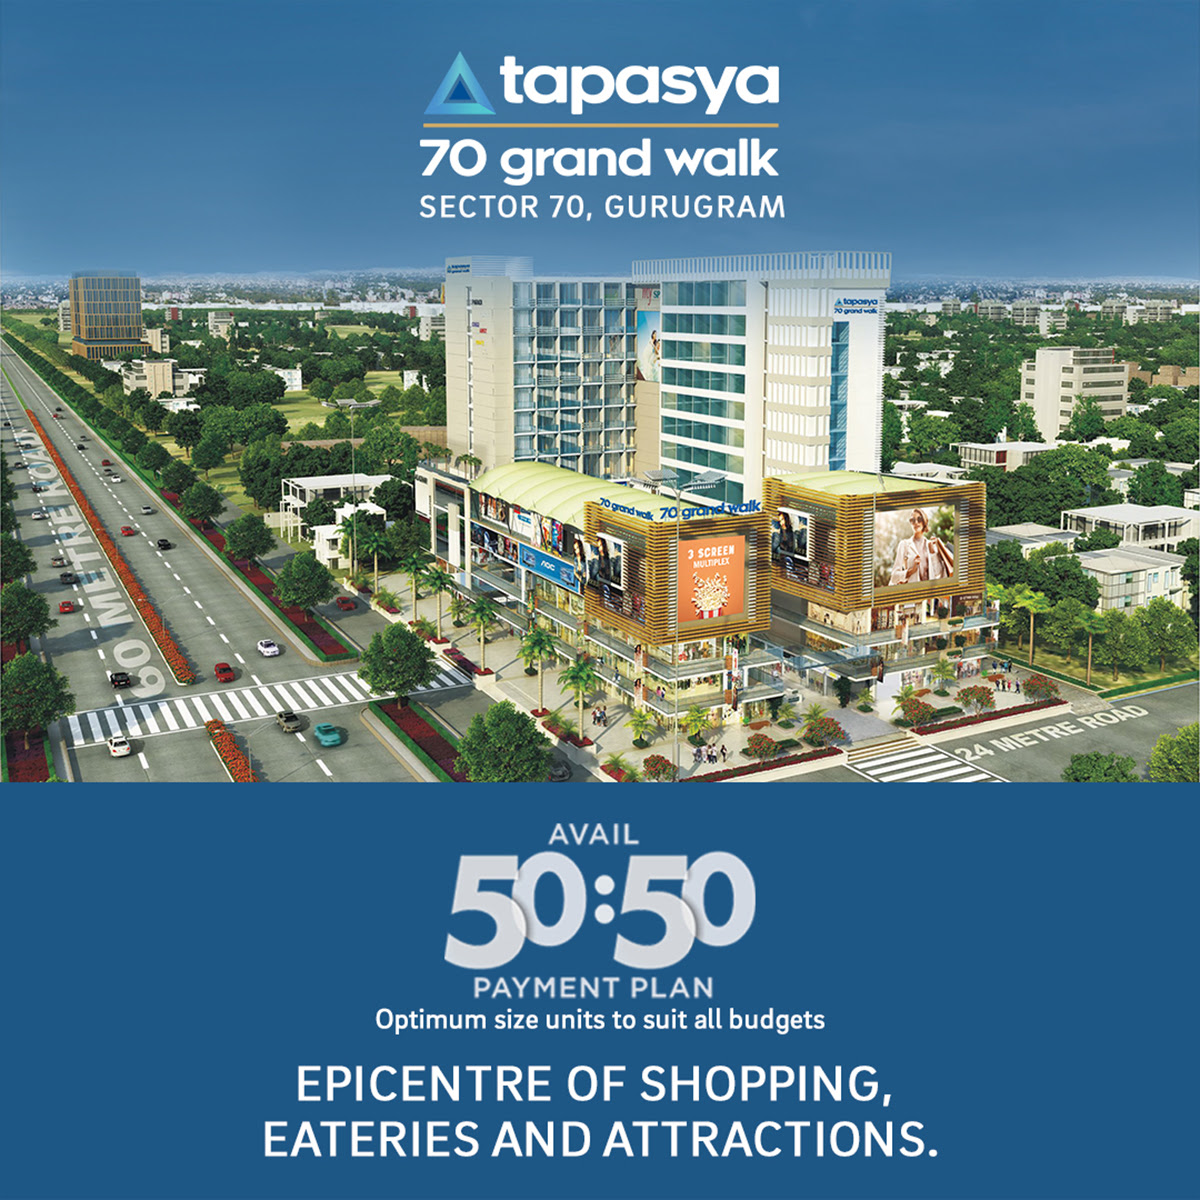 Avail 50:50 payment plan at Tapasya 70 Grandwalk in Gurgaon Update